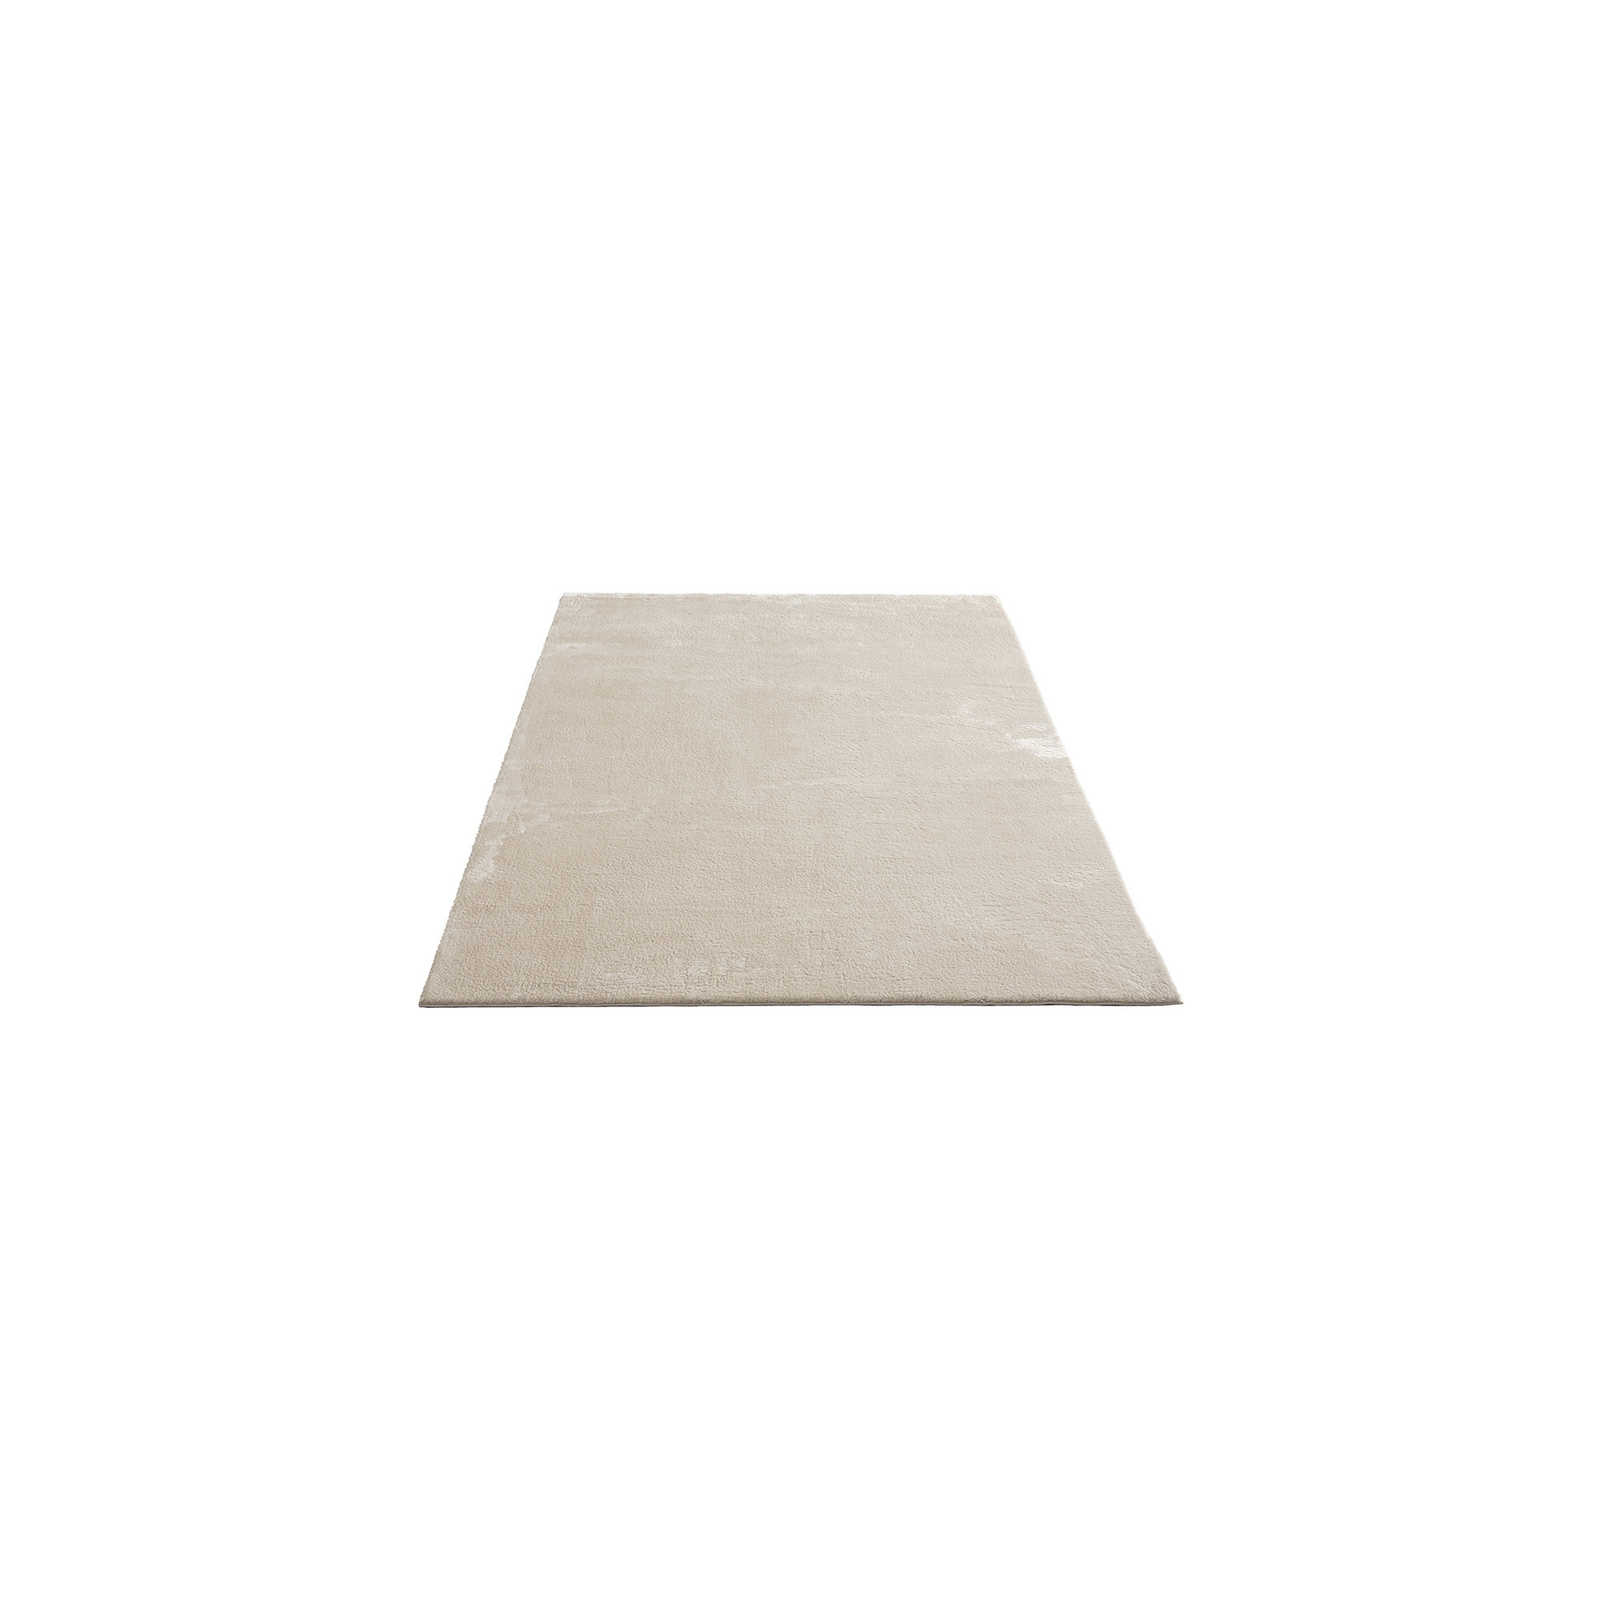 Zacht hoogpolig tapijt in beige - 170 x 120 cm
